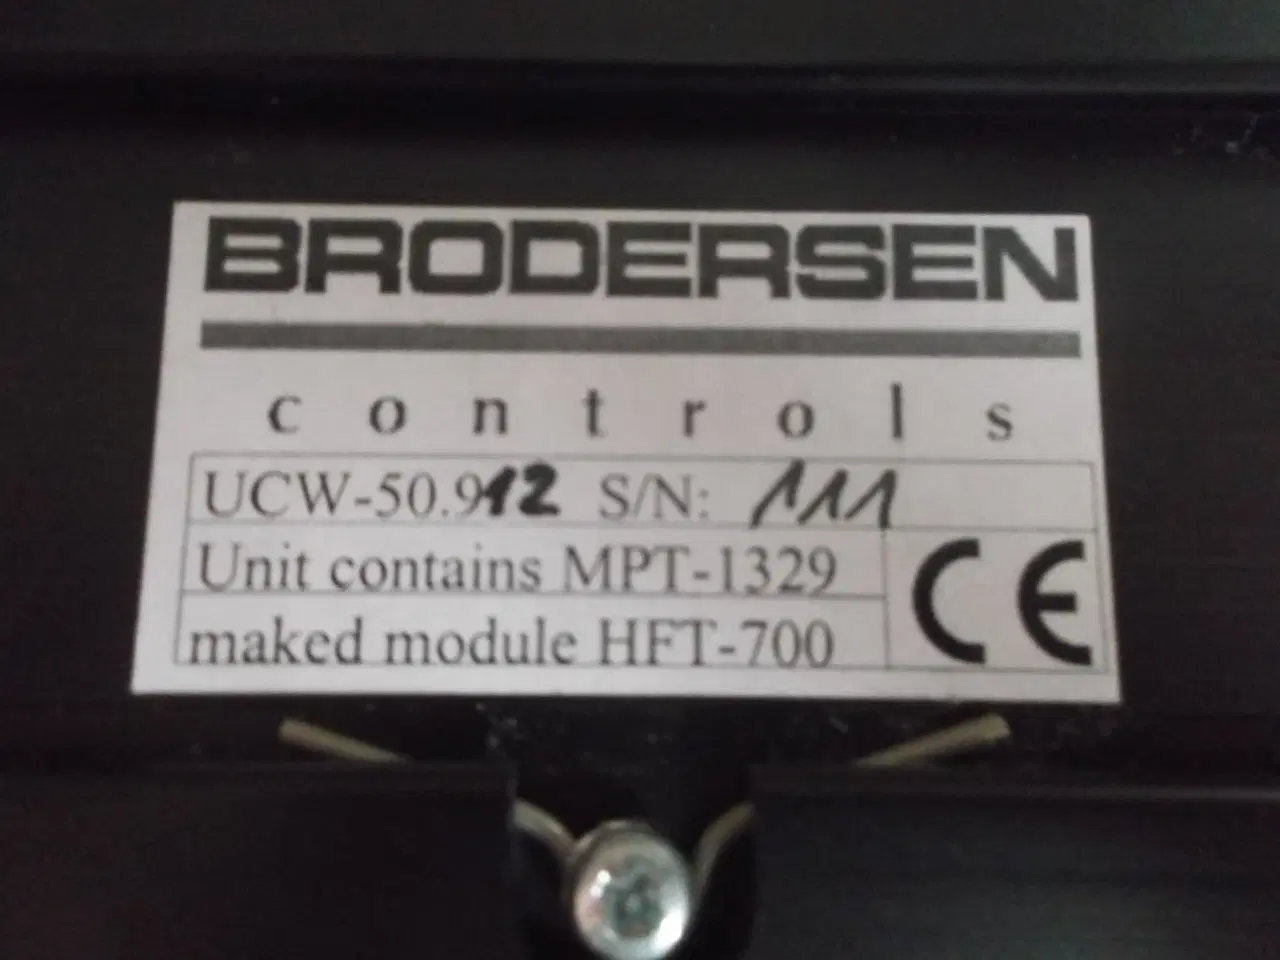 Billede 3 - Brodersen Controls radio modul UCW-50.912